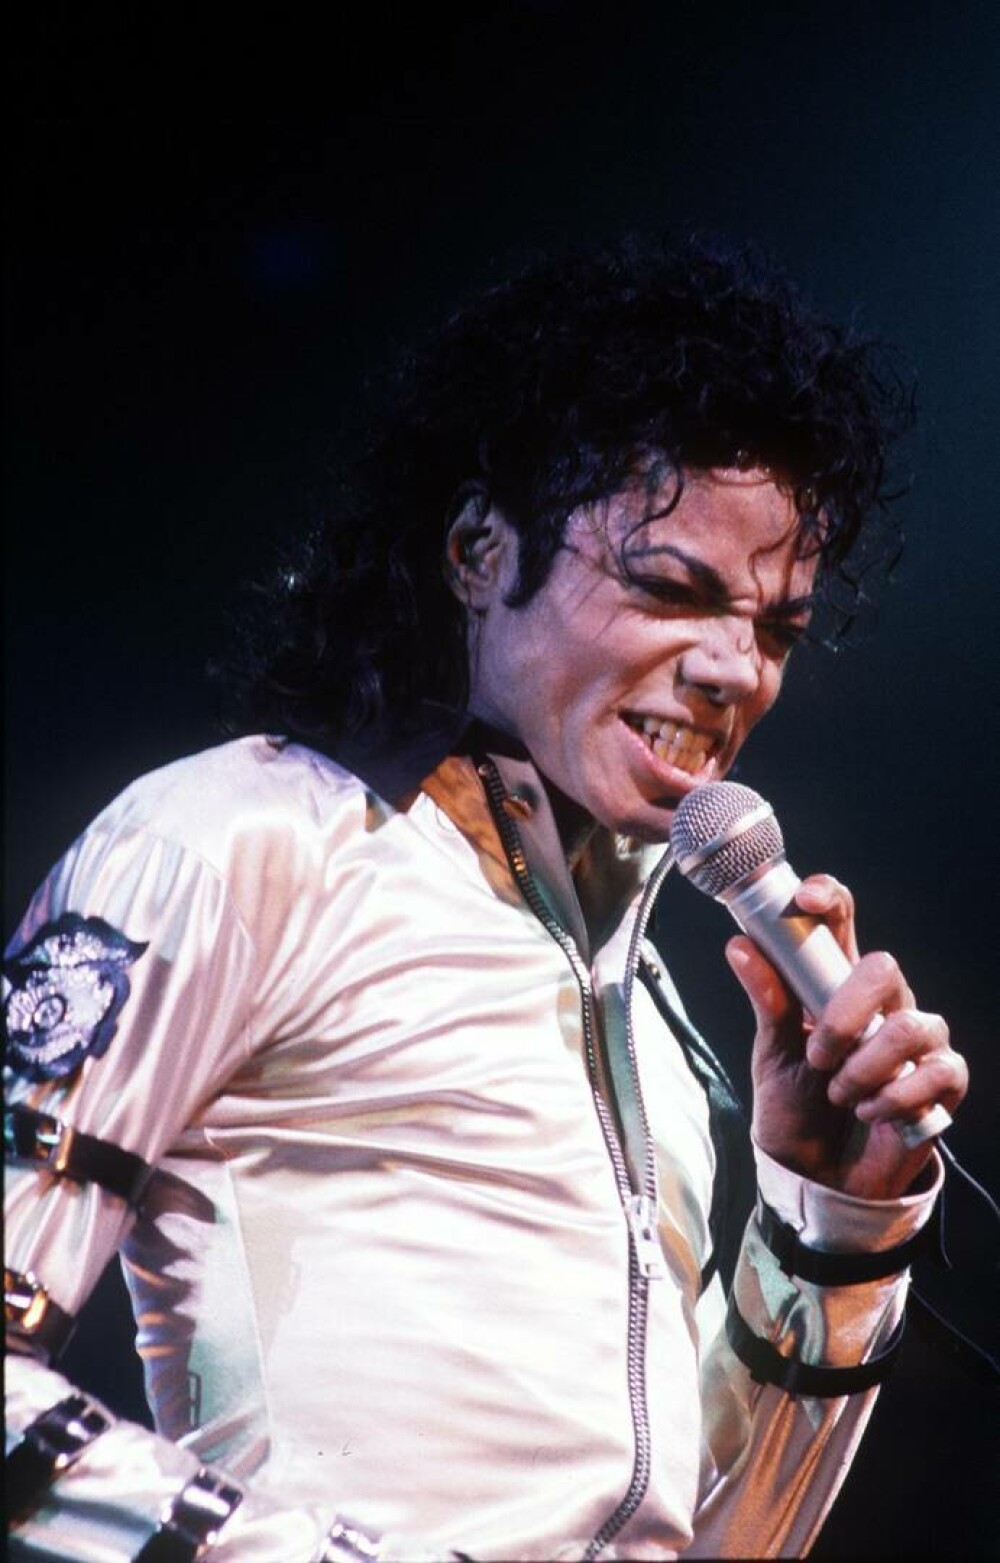 Imagini de colecție cu Michael Jackson. Regele muzicii pop ar fi împlinit 65 de ani | GALERIE FOTO - Imaginea 8